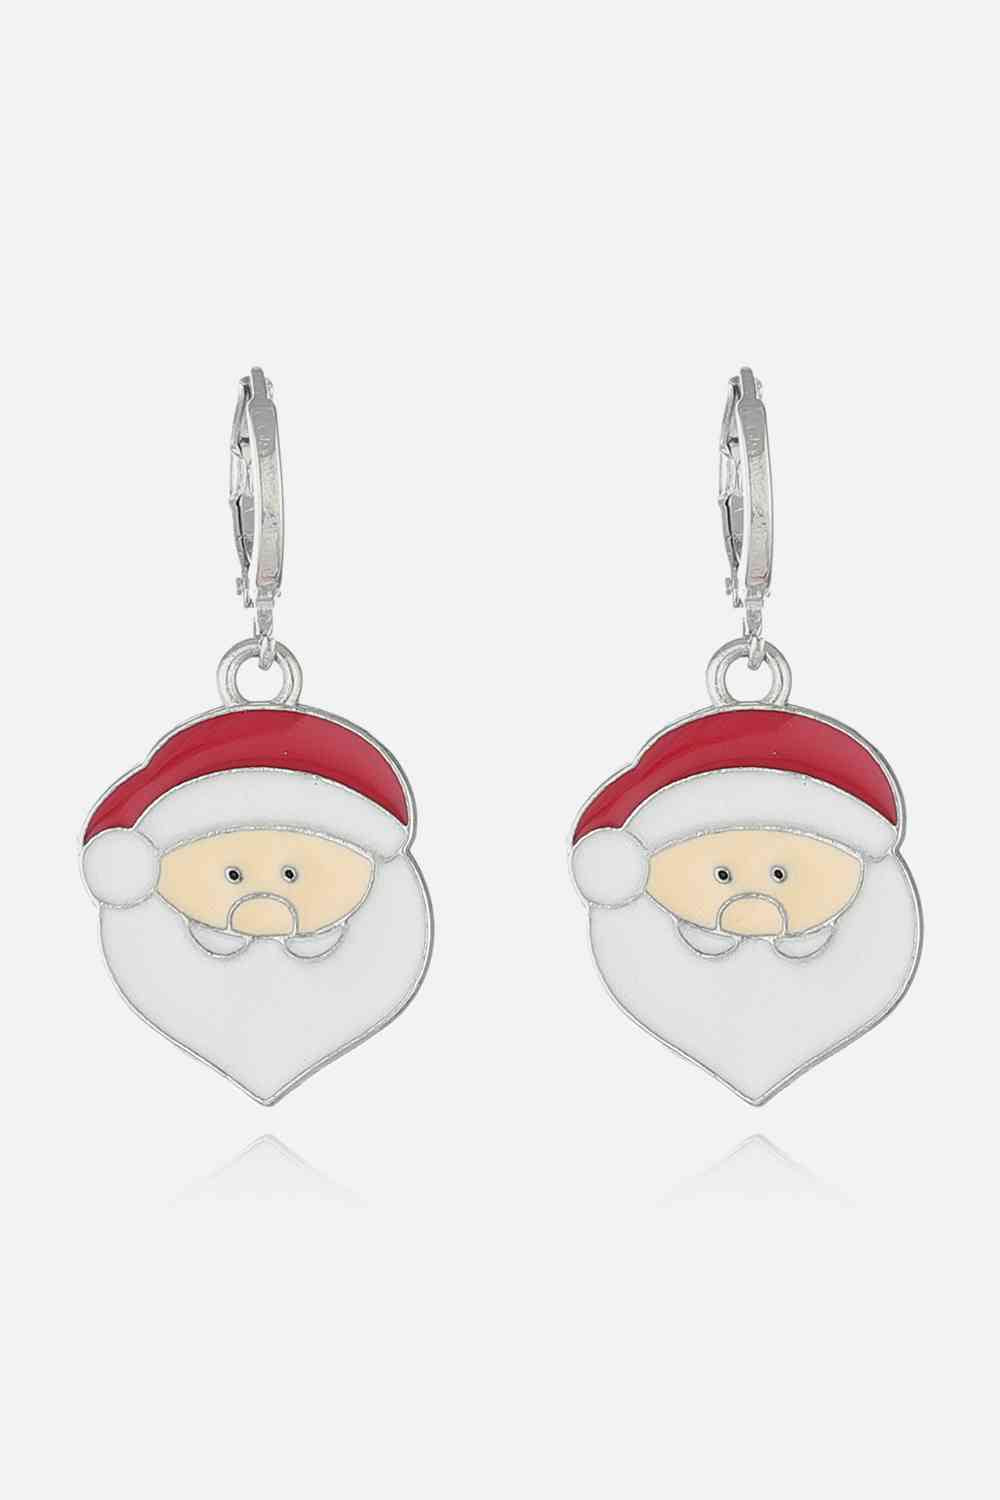 Christmas Theme Alloy Earrings - Style I / One Size - Women’s Jewelry - Earrings - 8 - 2024